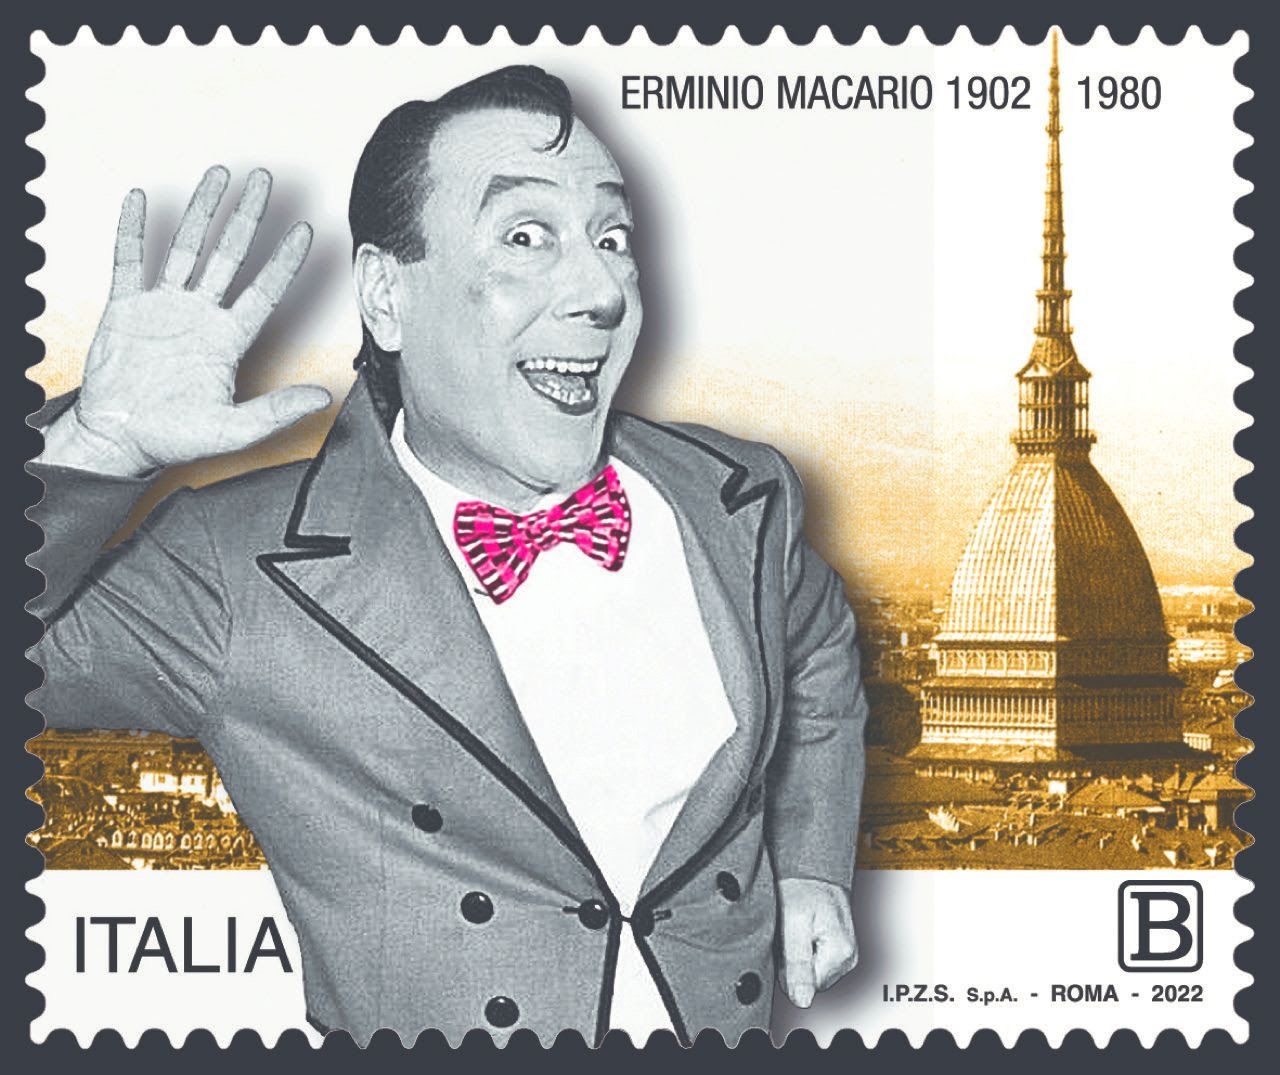 Ecco il francobollo dedicato a Macario